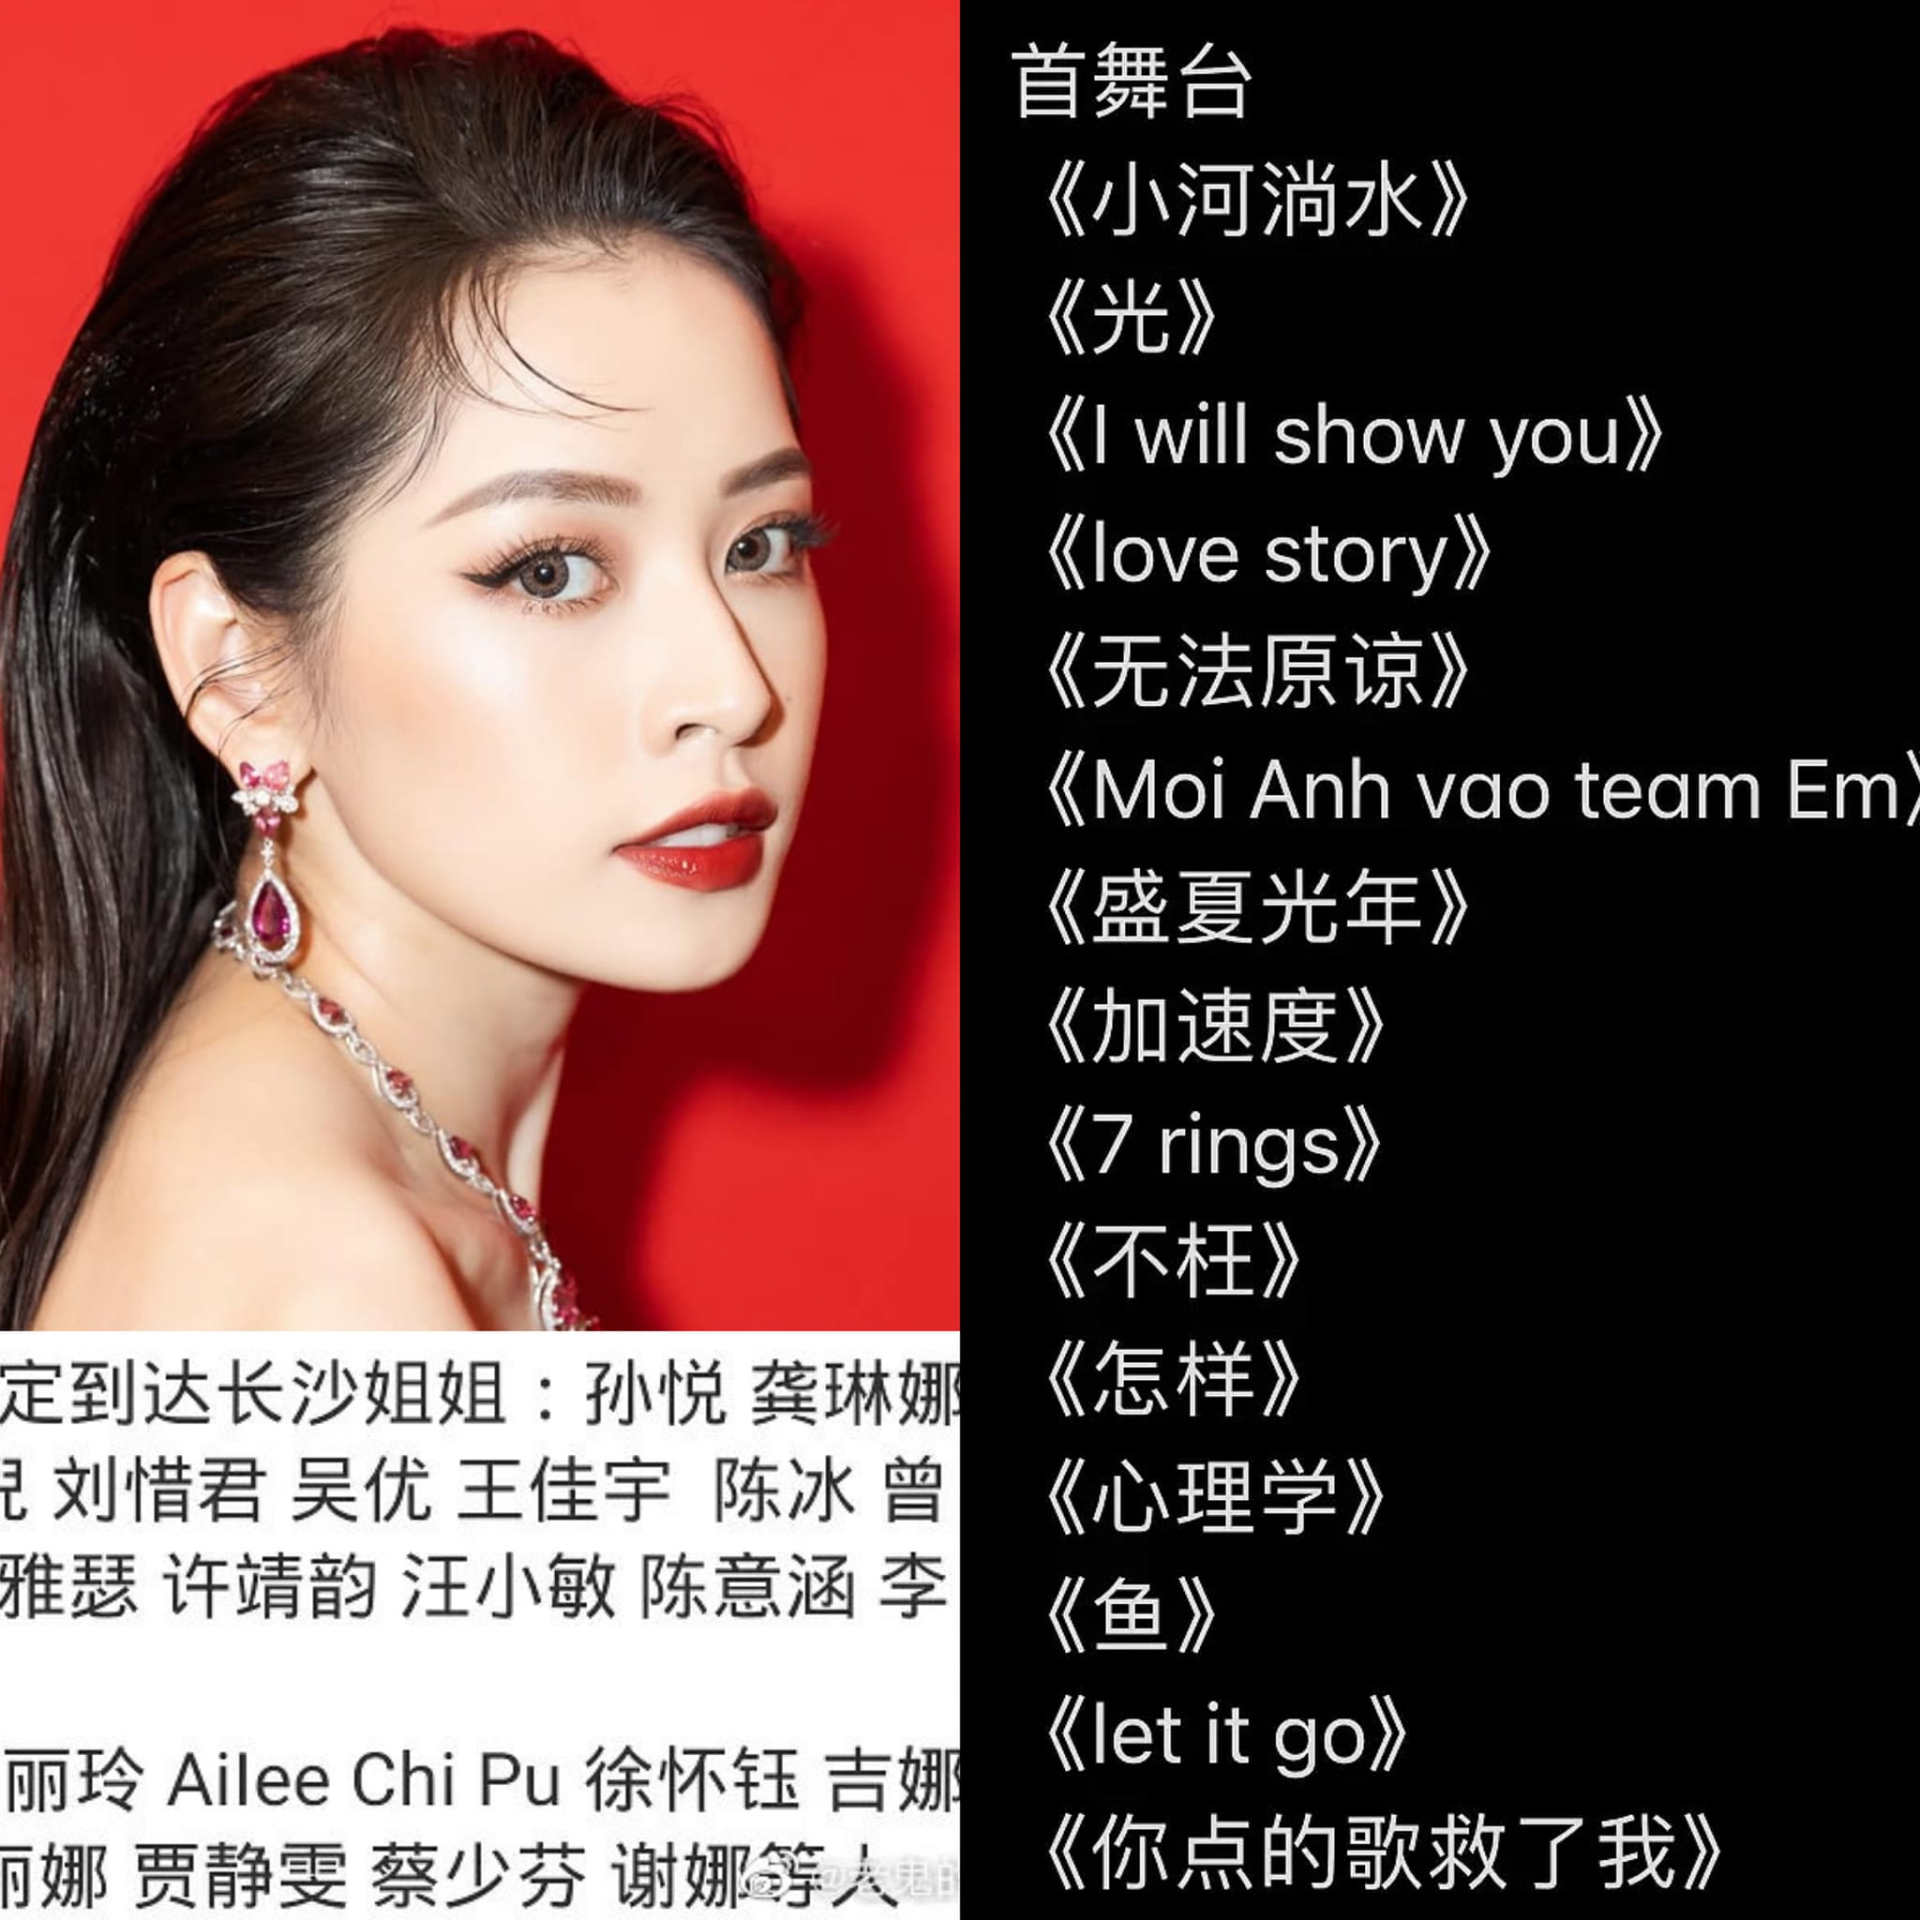 Rộ tin Chi Pu sẽ trình diễn bản hit gây tranh cãi 'Mời anh vào team em' ở show âm nhạc Trung Quốc - ảnh 4